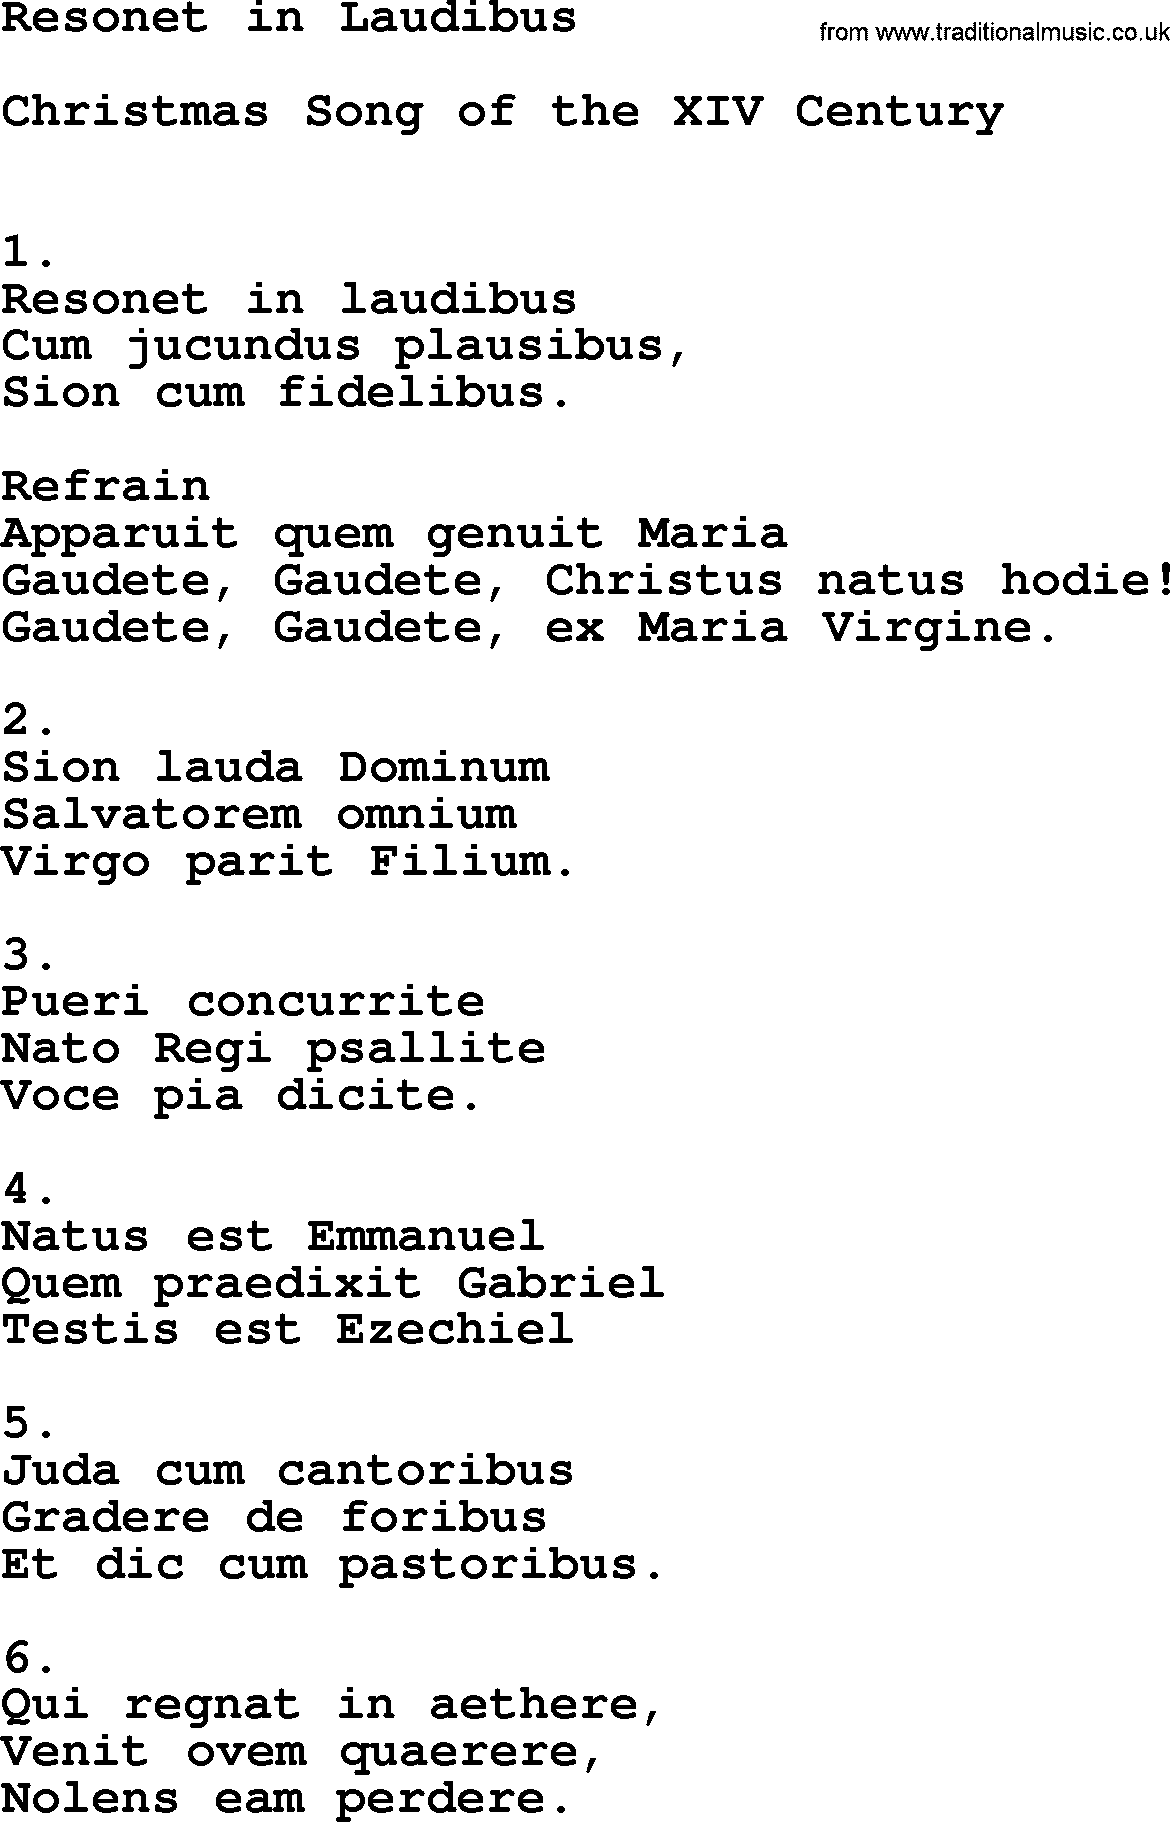 Catholic Hymn: Resonet In Laudibus lyrics with PDF